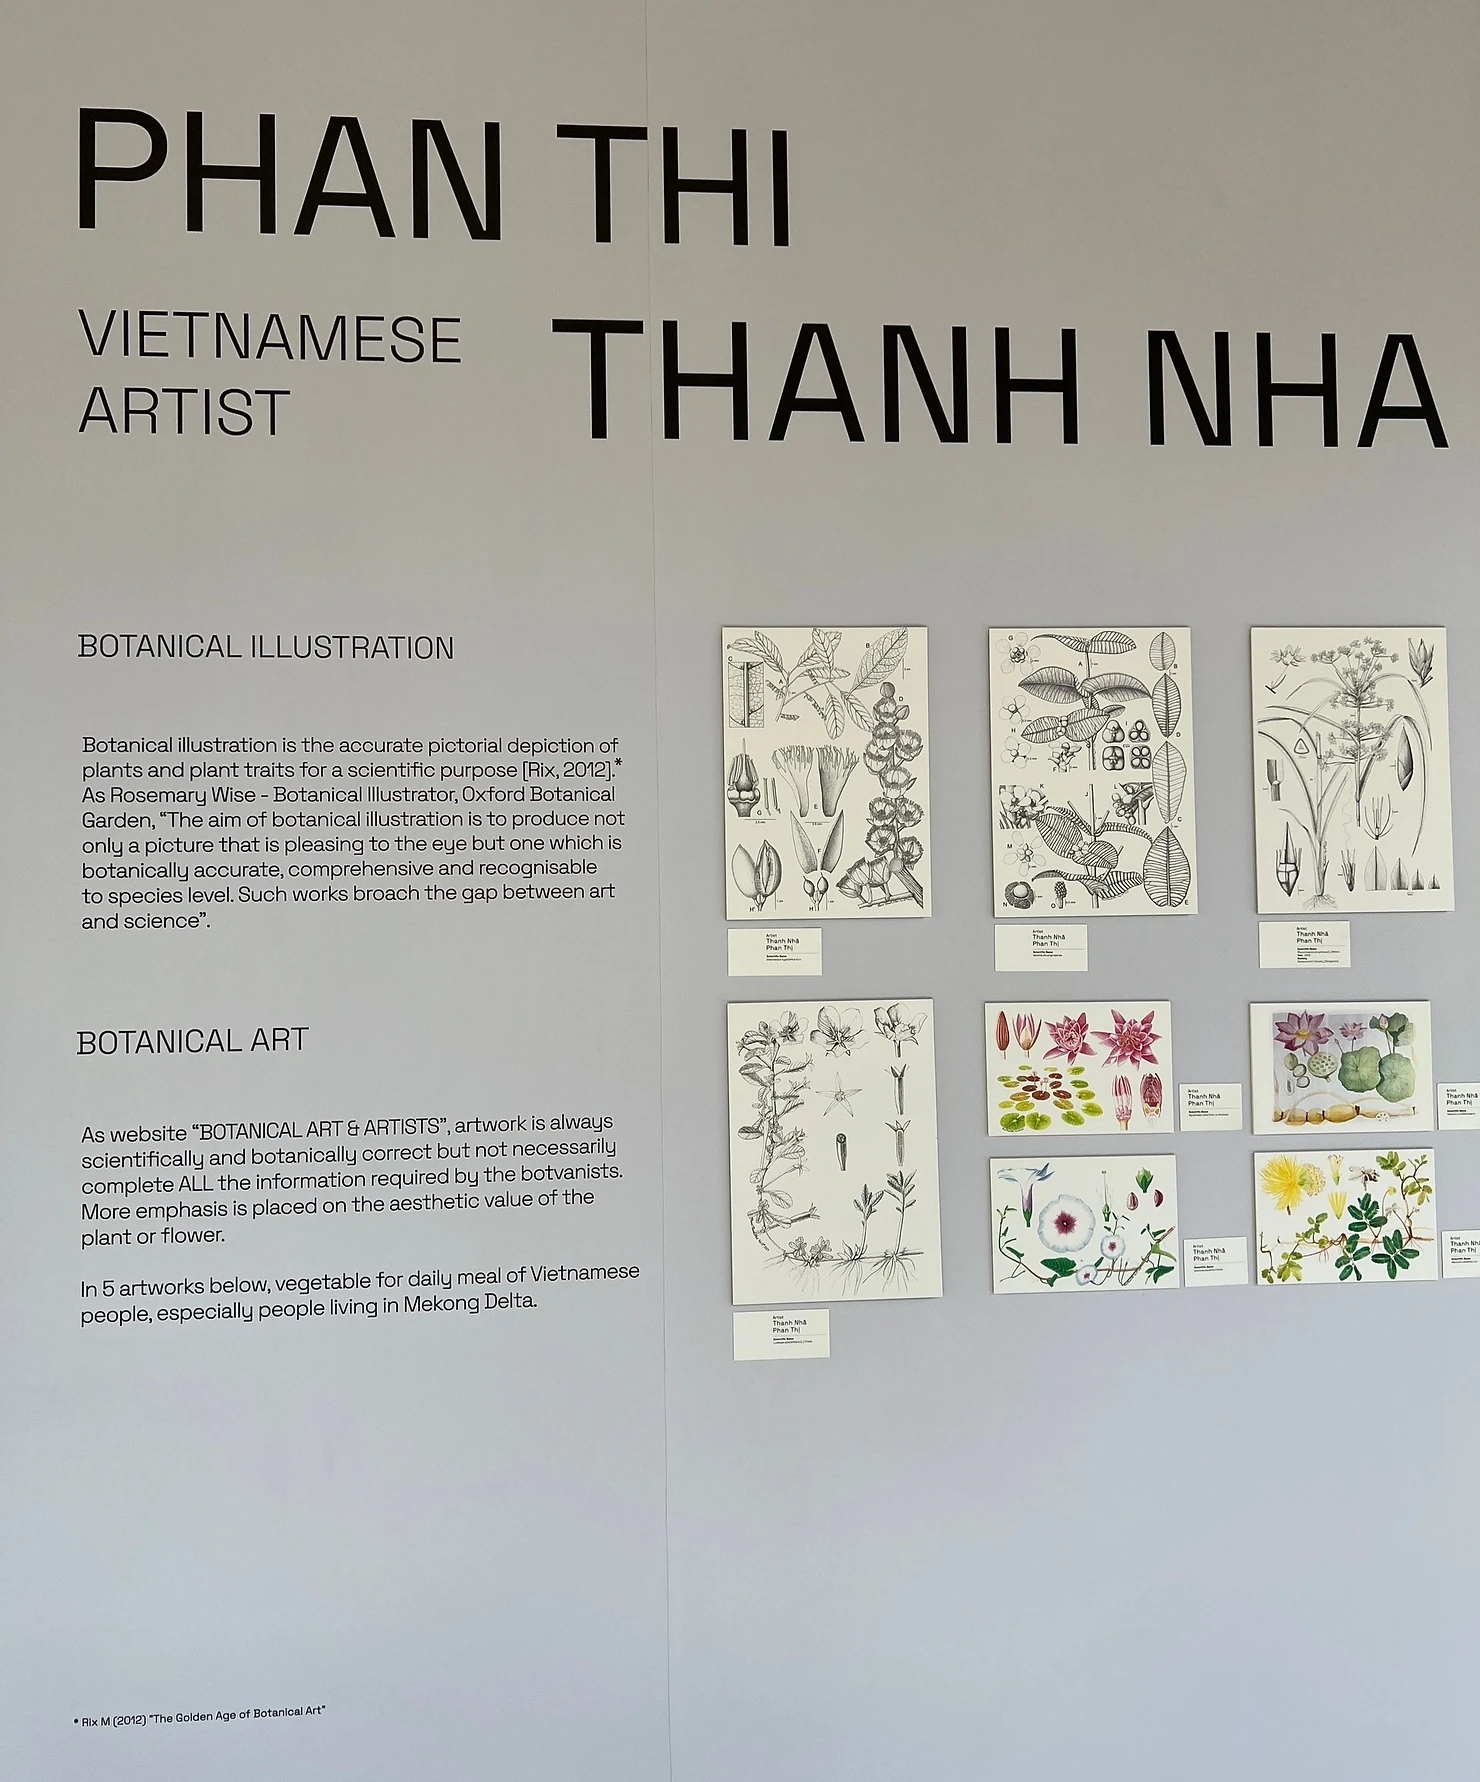 Bảng thông tin về nghệ sĩ Phan Thị Thanh Nhã được đặt trong không gian của buổi triển lãm FLORA Of Southeast Asia (Ảnh được cung cấp bởi Botanical Art Society Singapore)